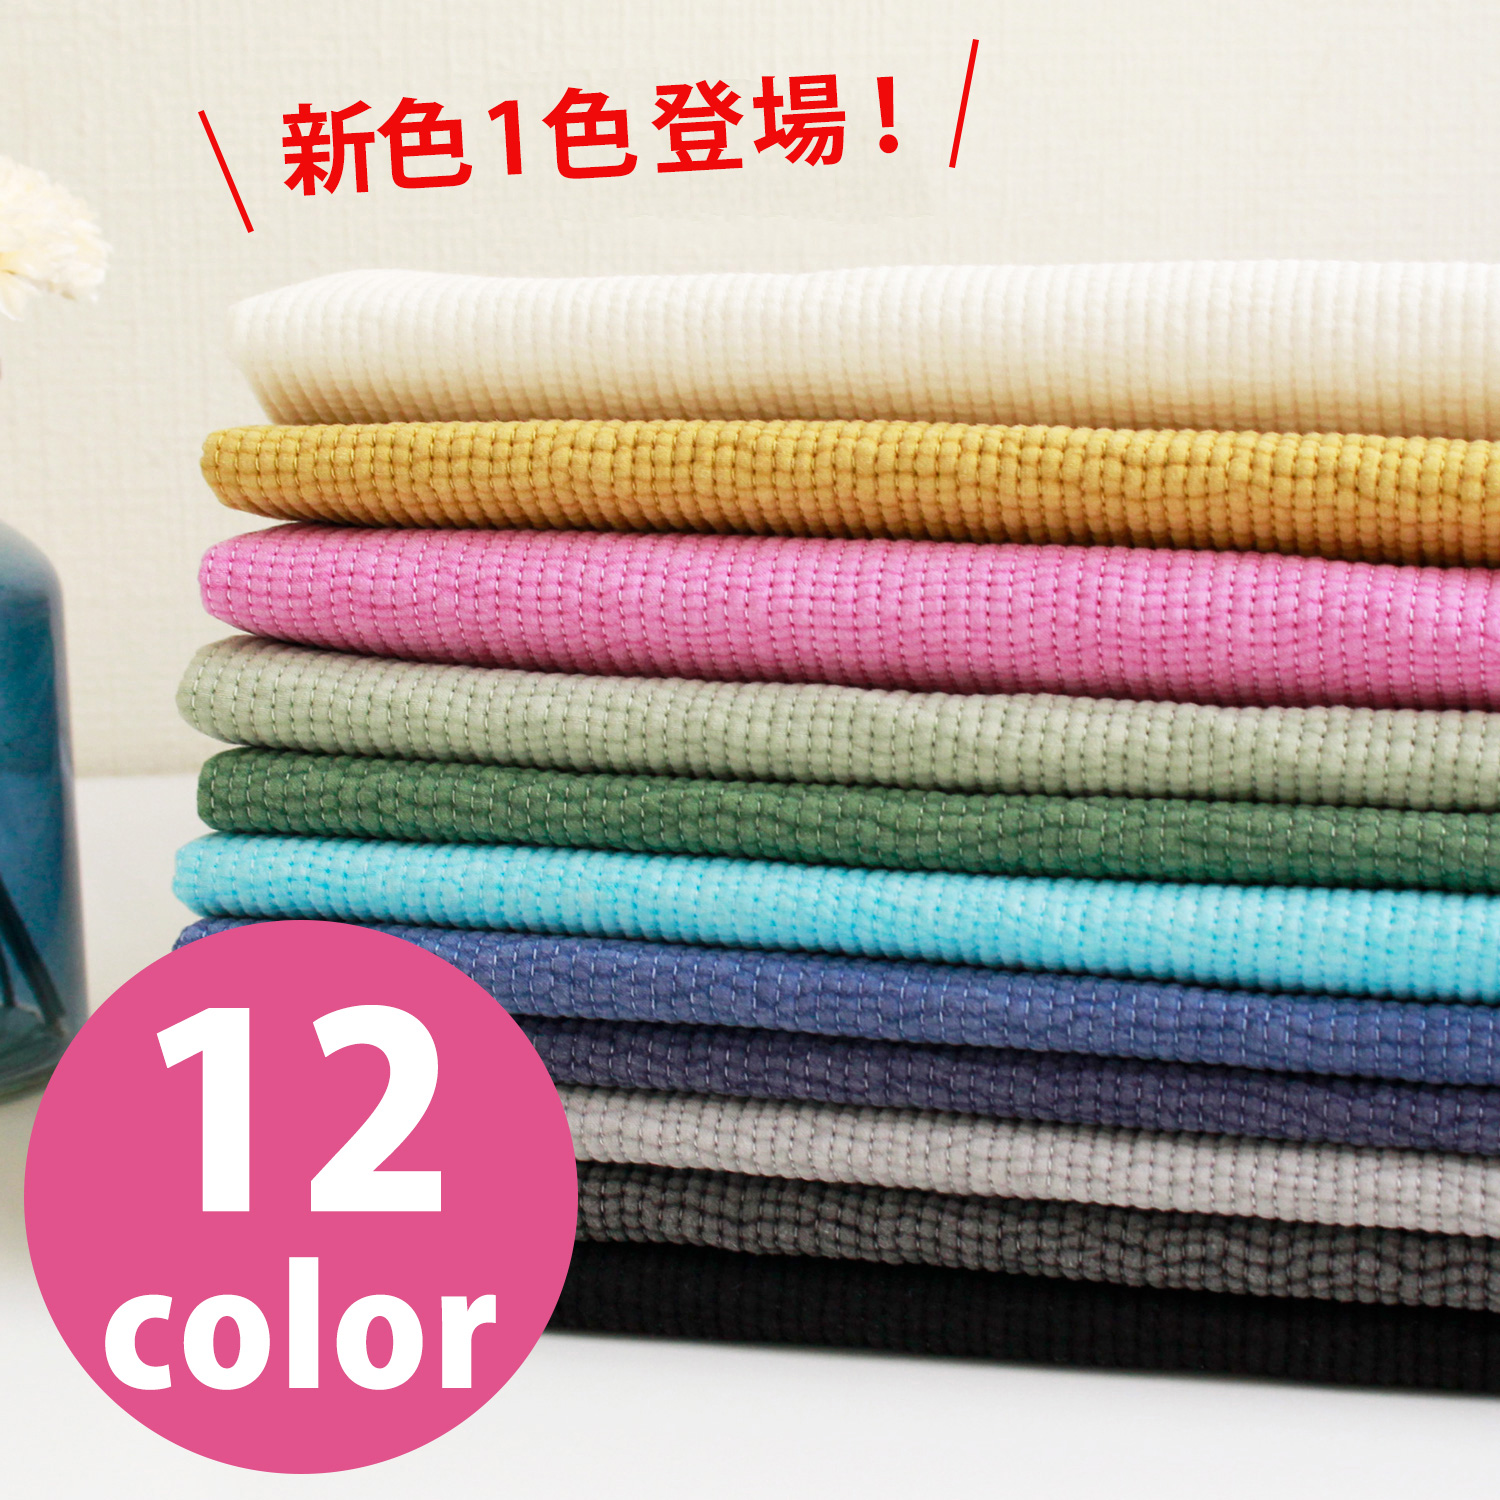 ■NBY303R nubi ヌビ 韓国伝統キルティング生地 巾3mmサイズ 原反約8m乱巻 (巻) 0